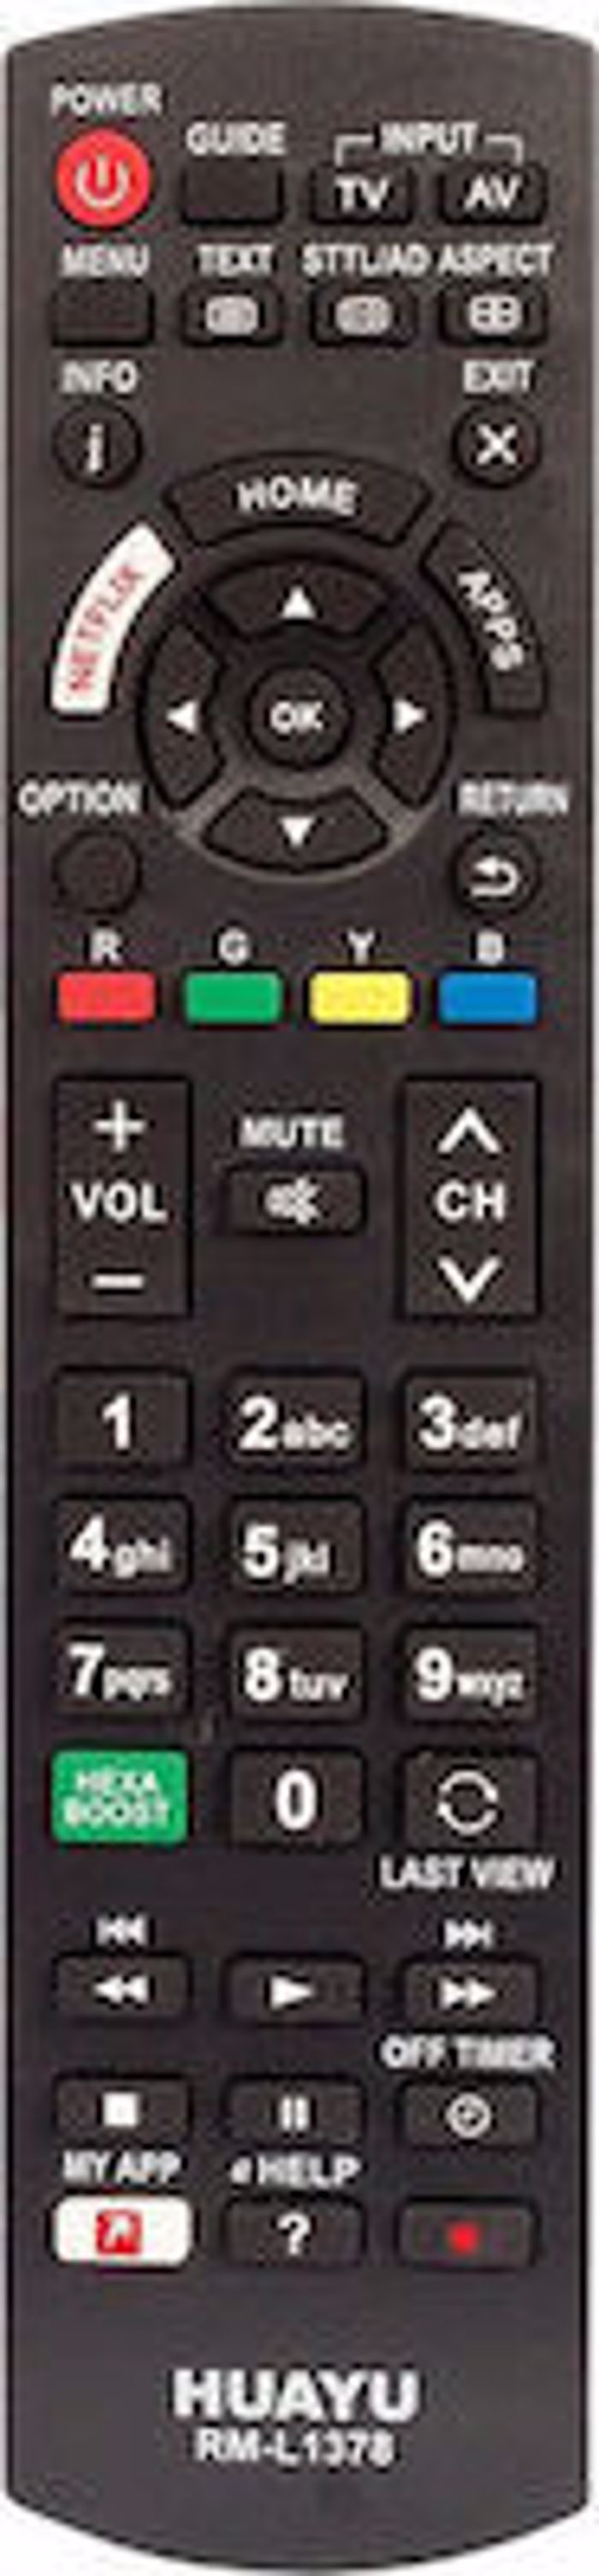 RM-L1378 (ga tileoraseis Panasonic)